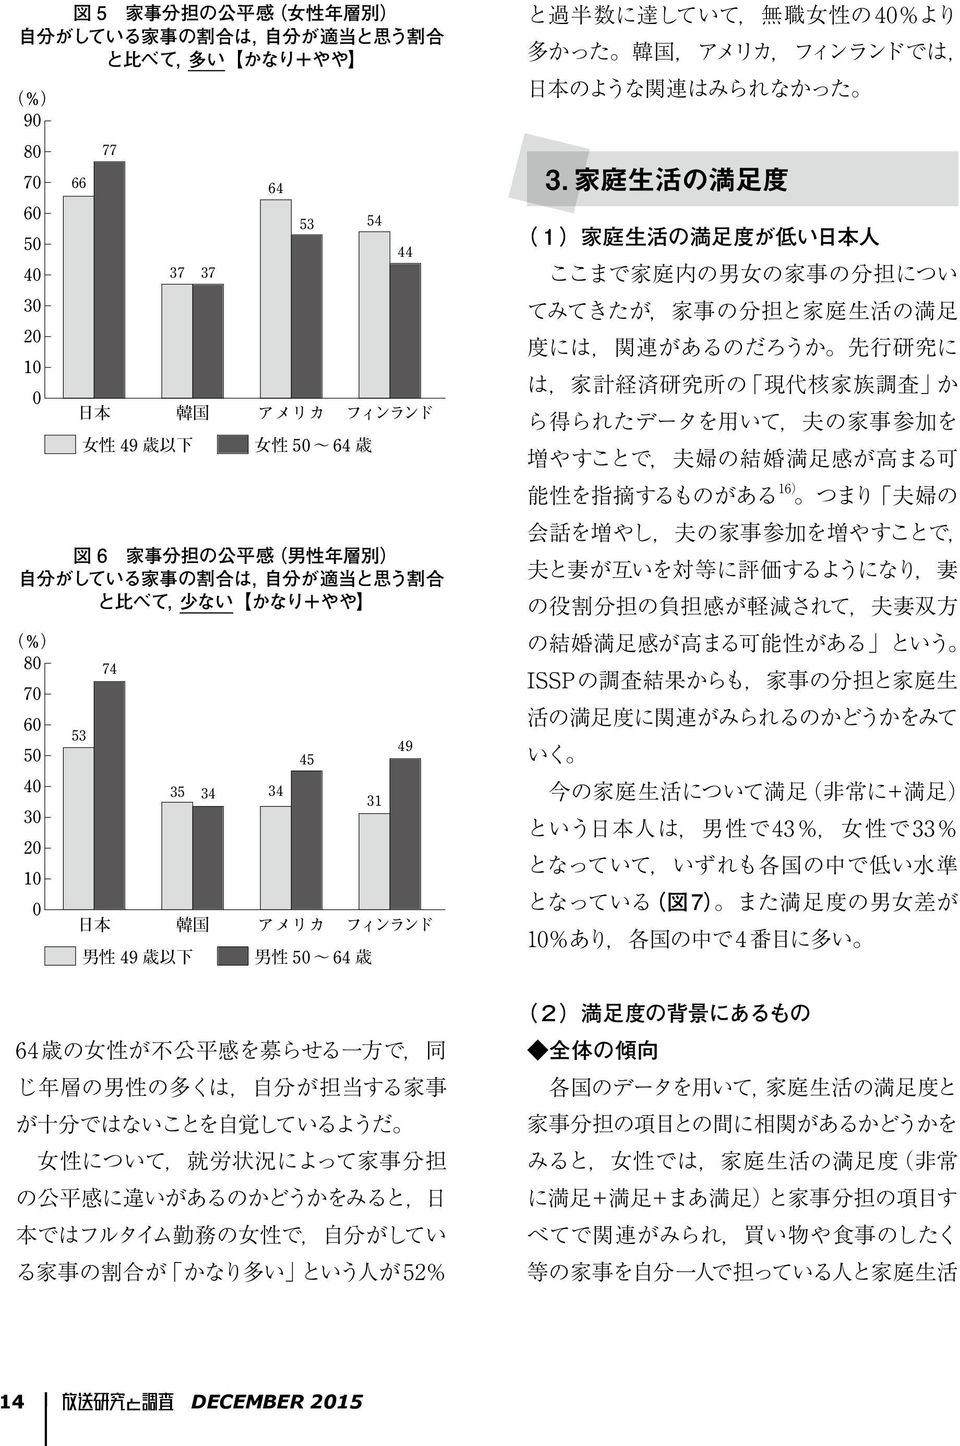 家 庭 生 活 の 満 足 度 (1) 家 庭 生 活 の 満 足 度 が 低 い 日 本 人 ここまで 家 庭 内 の 男 女 の 家 事 の 分 担 につい てみてきたが, 家 事 の 分 担 と 家 庭 生 活 の 満 足 度 には, 関 連 があるのだろうか 先 行 研 究 に は, 家 計 経 済 研 究 所 の 現 代 核 家 族 調 査 か ら 得 られたデータを 用 いて, 夫